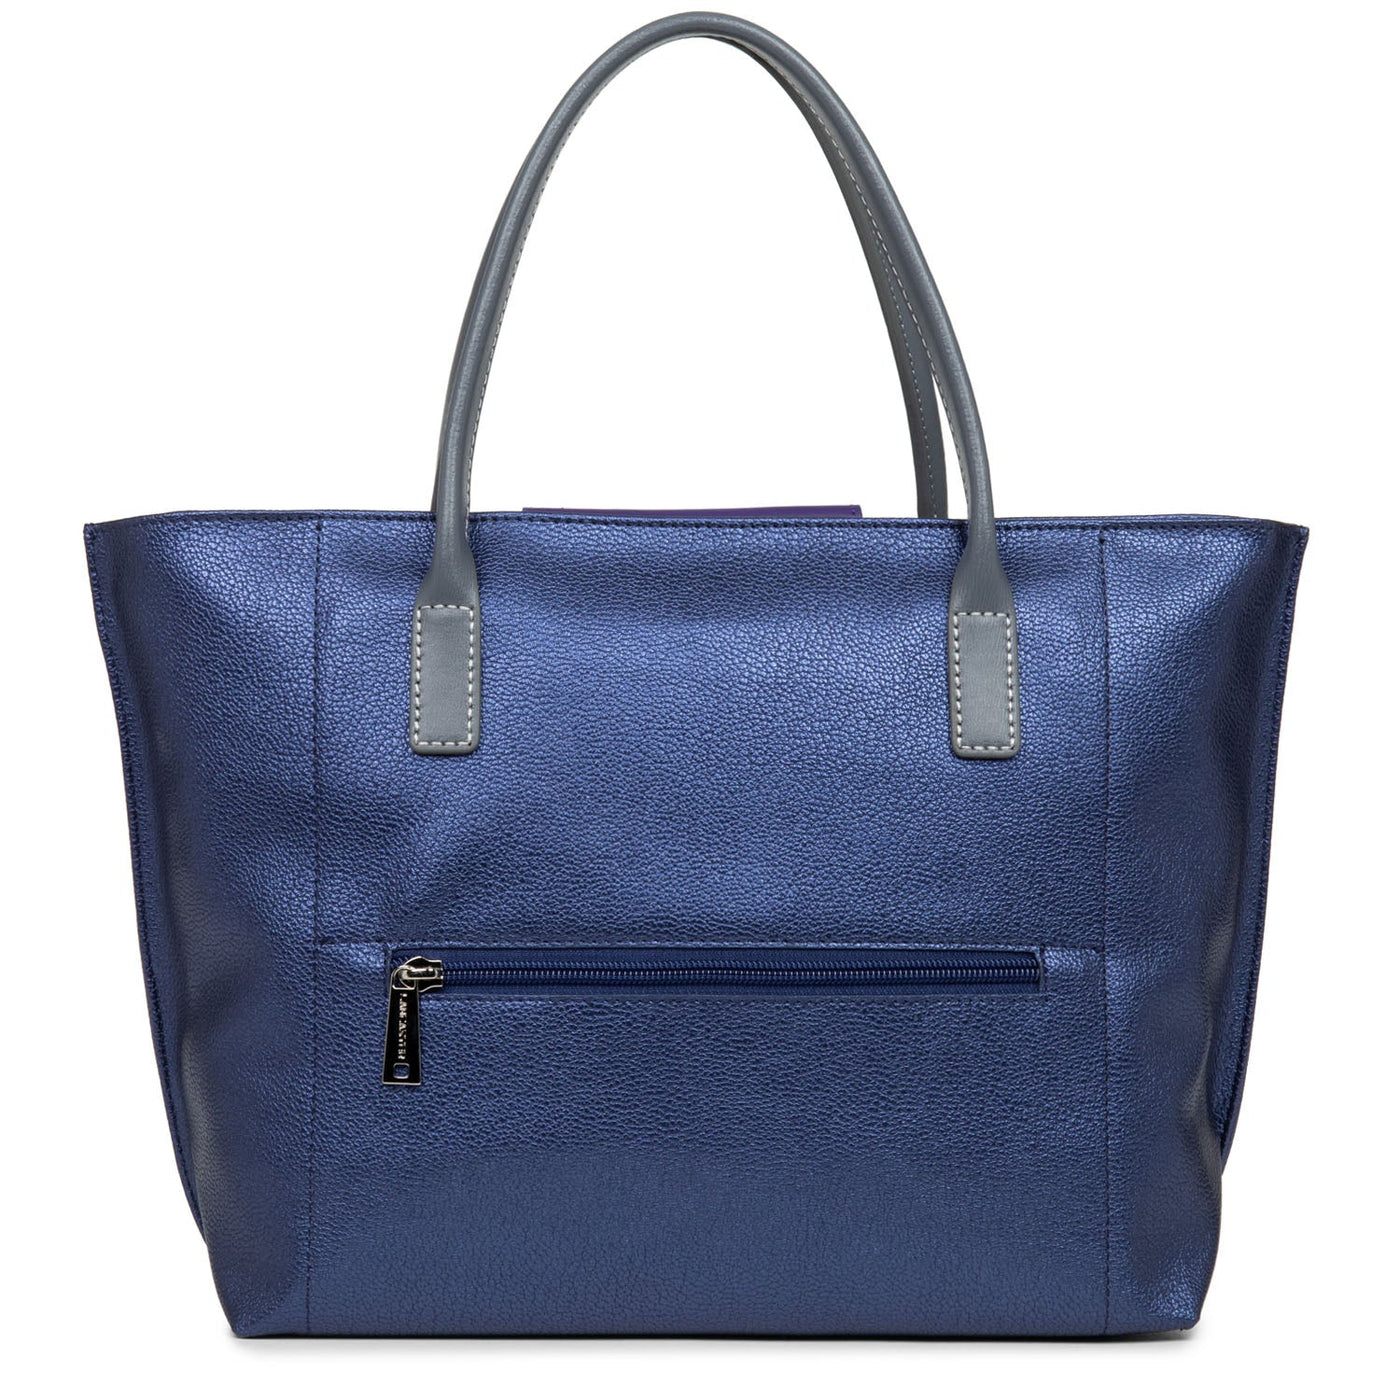 m handbag - maya #couleur_saphir-violet-gris